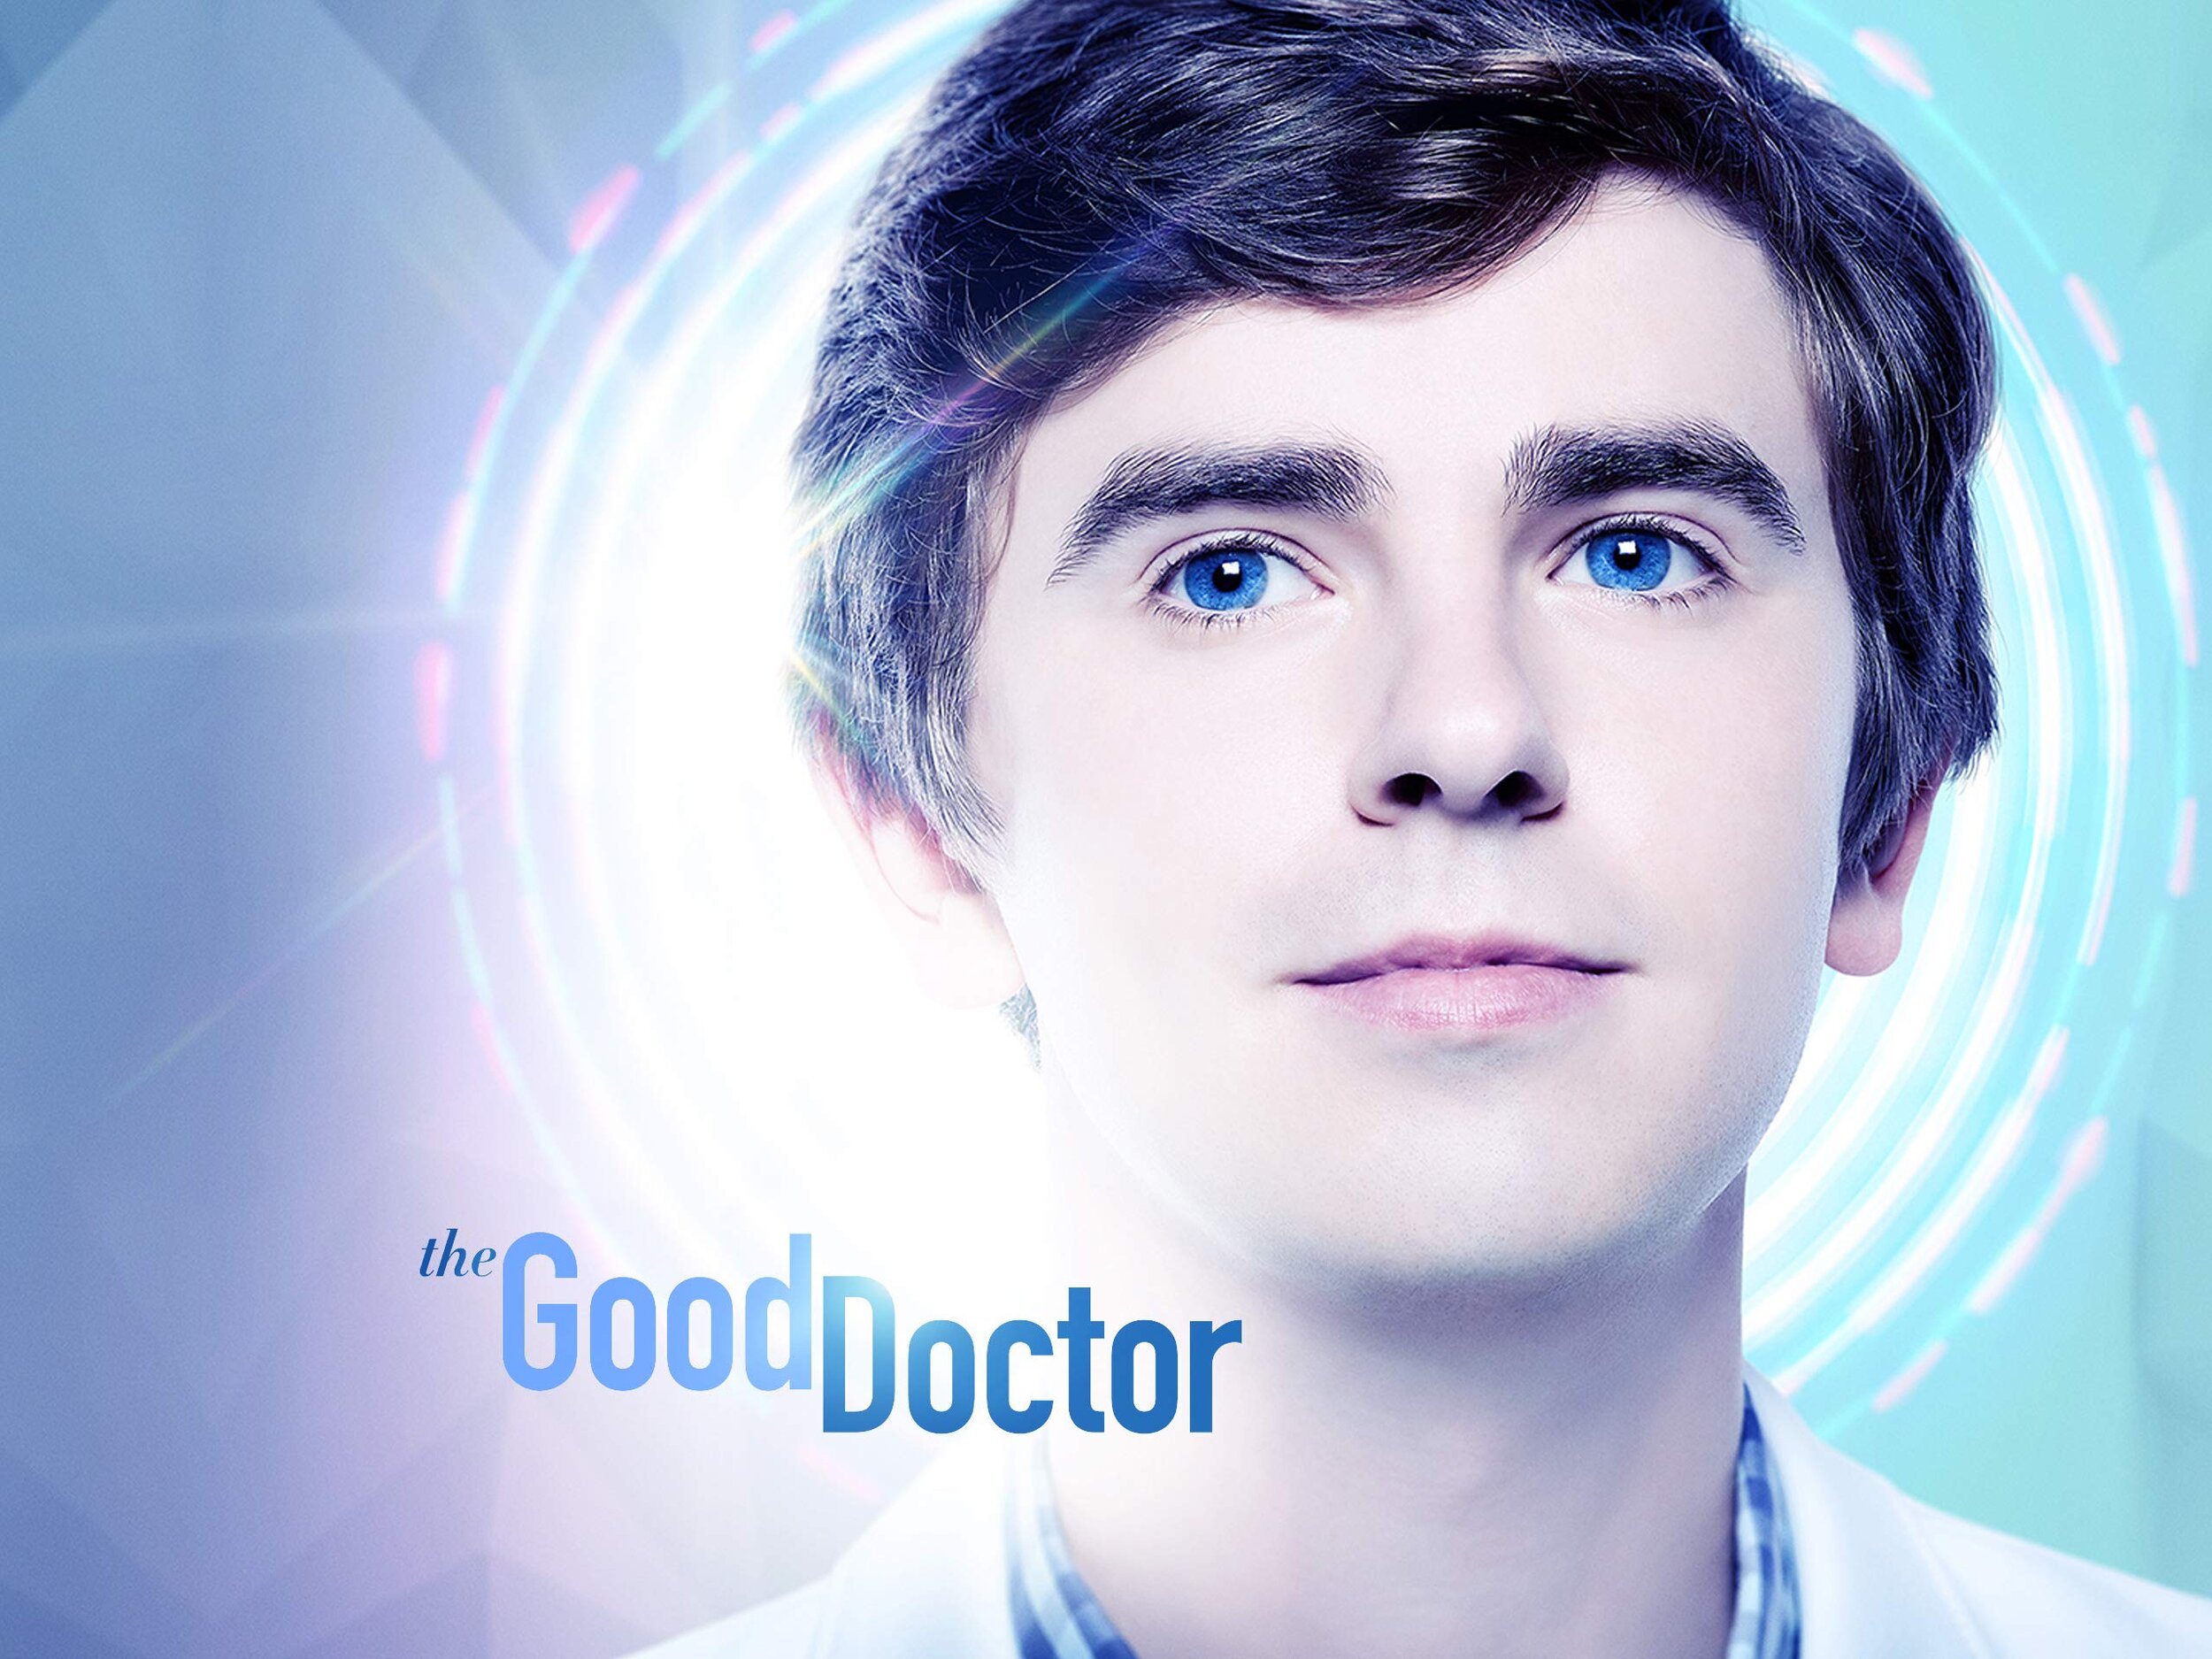   The Good Doctor  Source: Amazon 